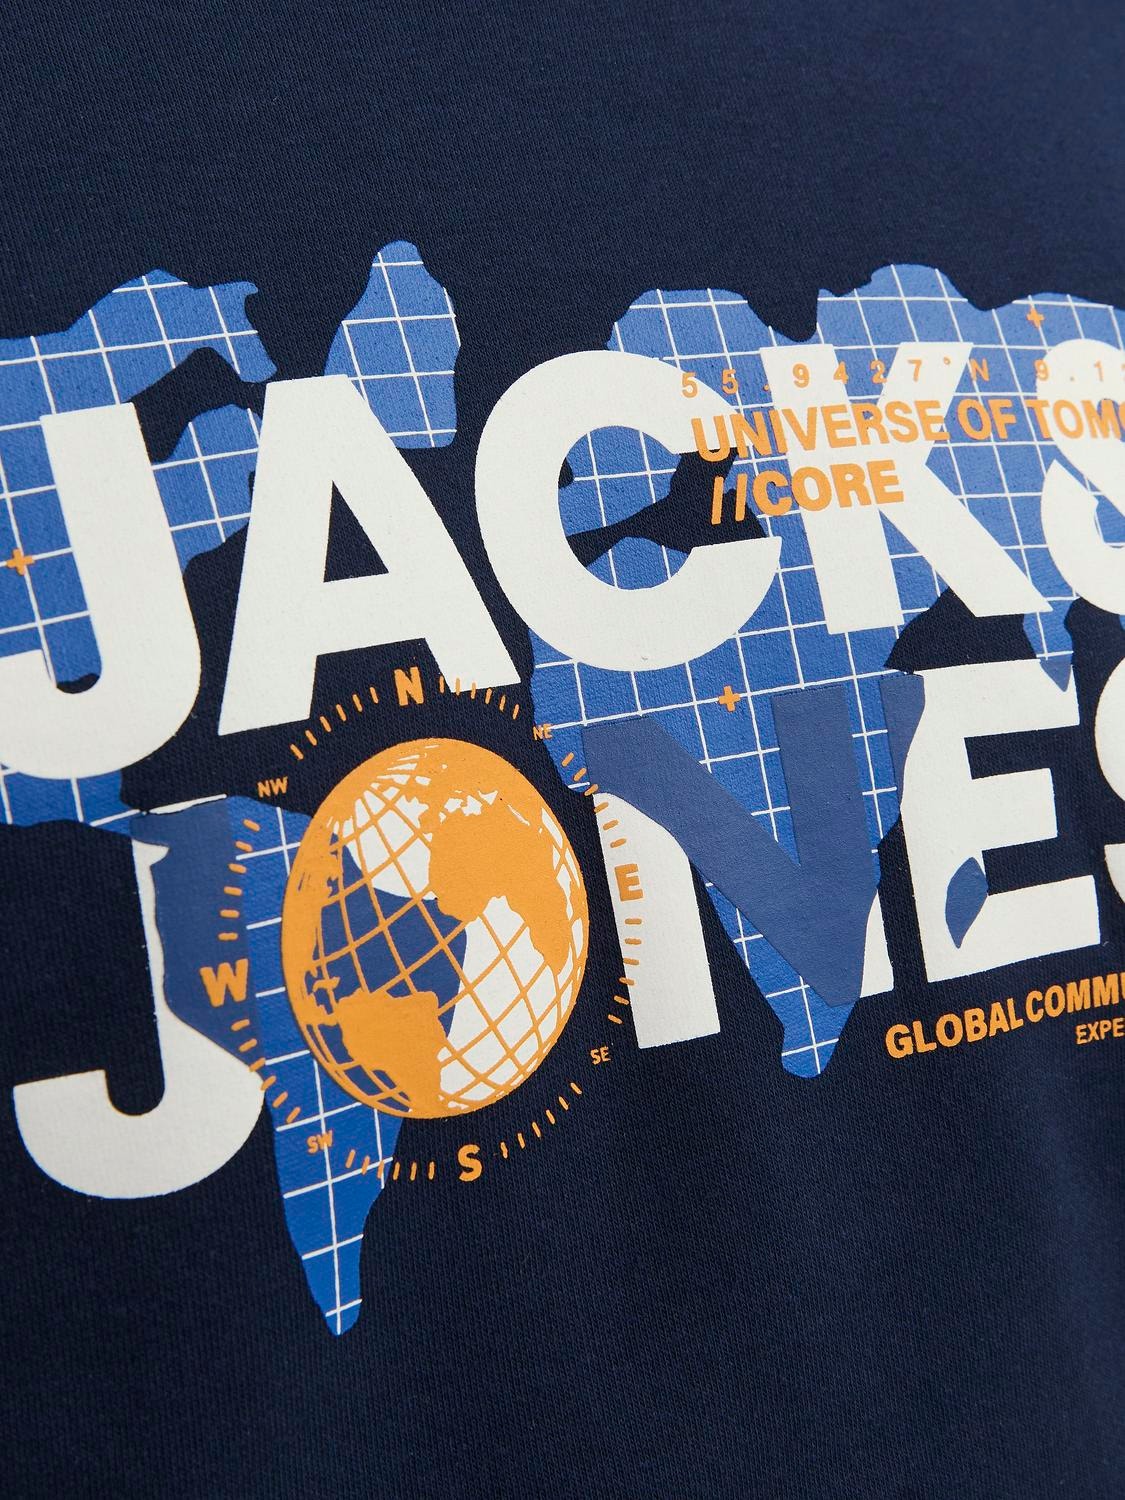 Jack & Jones Logotipas Apatinis prakaituojantis megztinis -Navy Blazer - 12240211